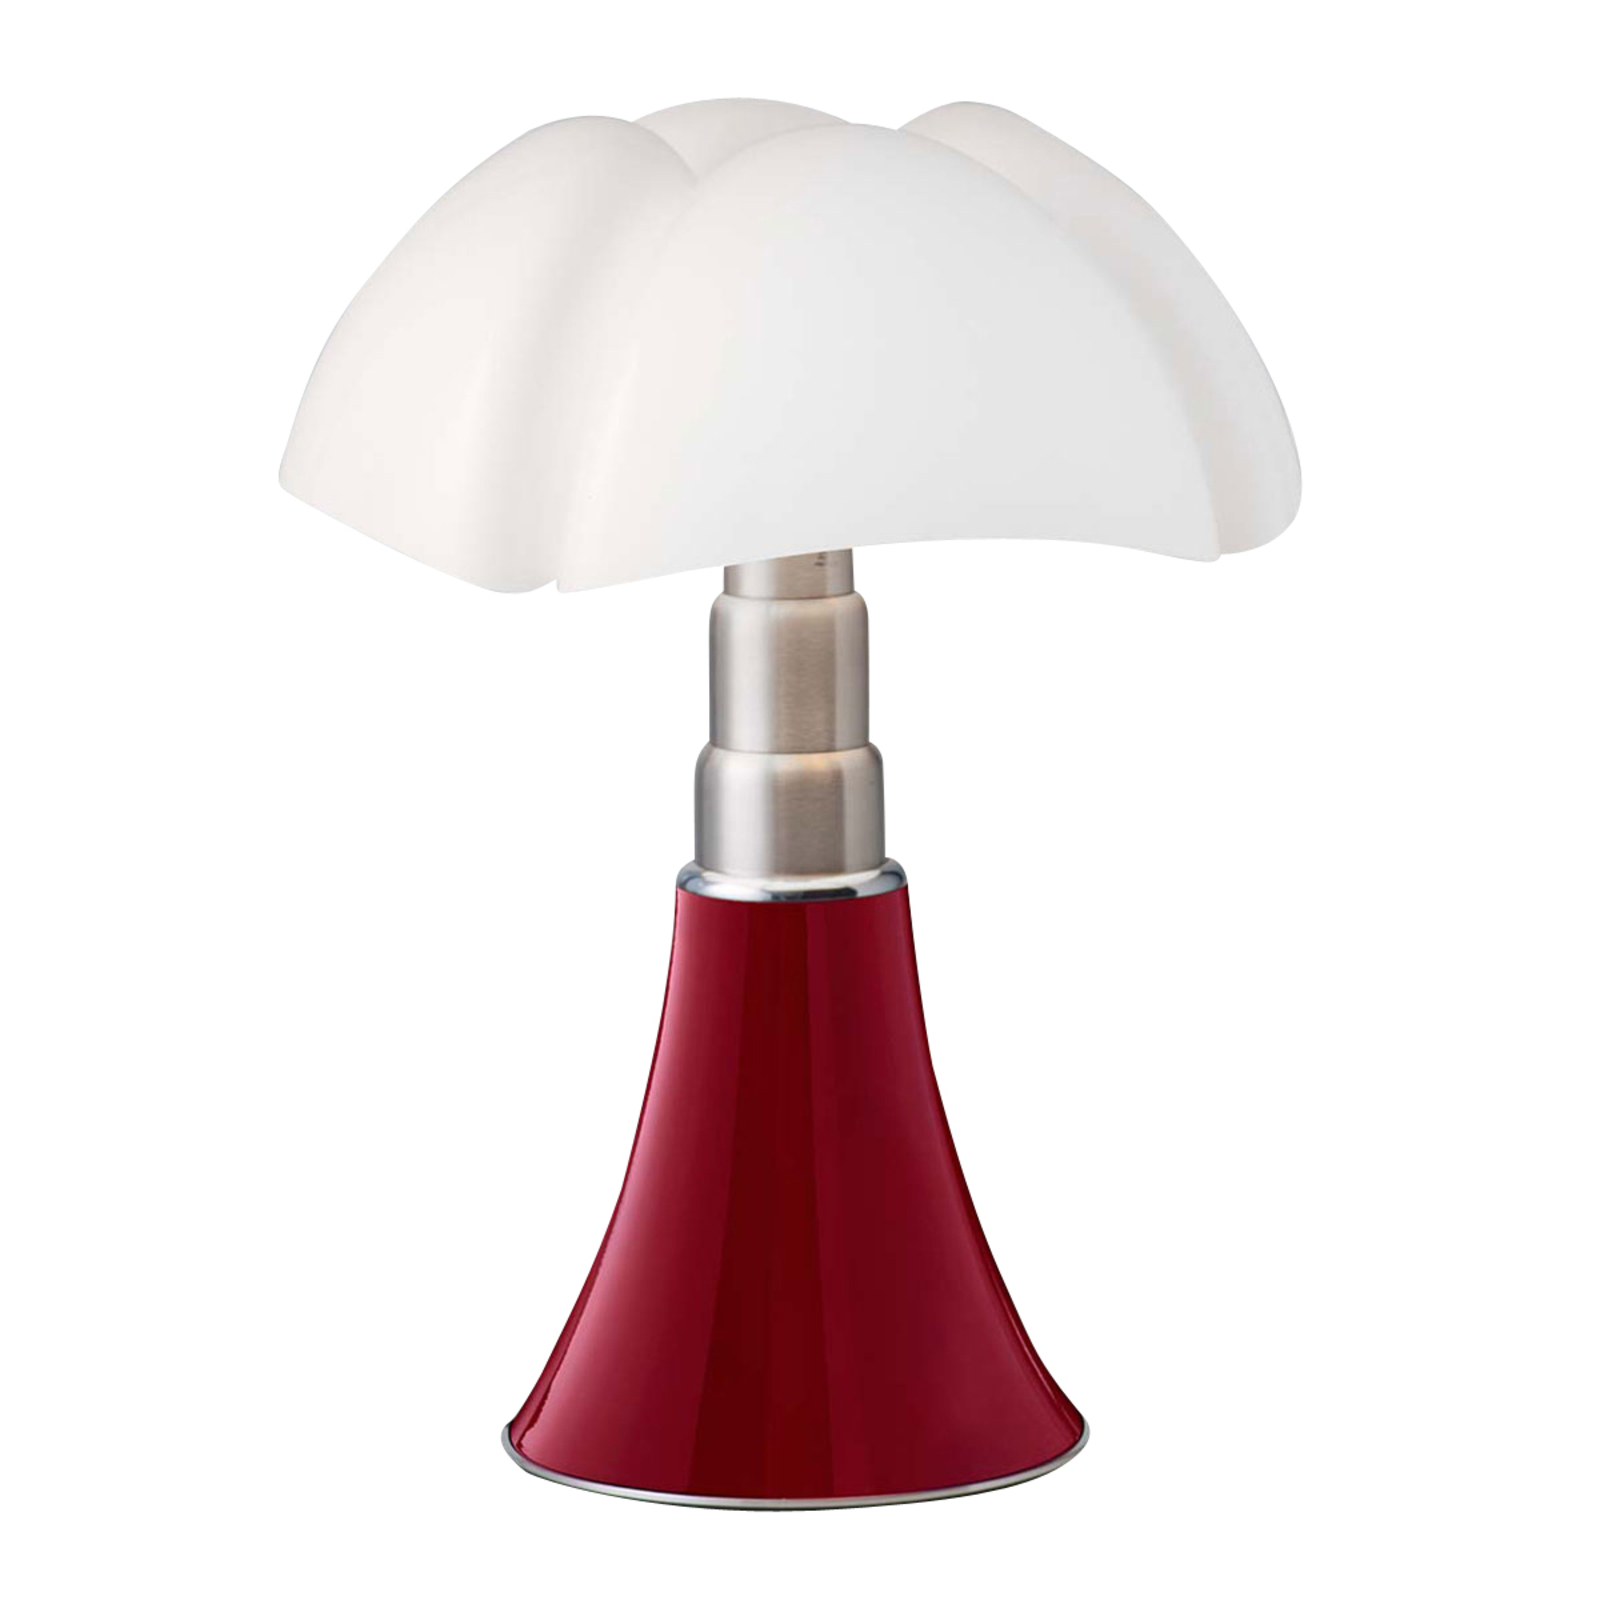 Martinelli Luce Minipipistrello table lamp red